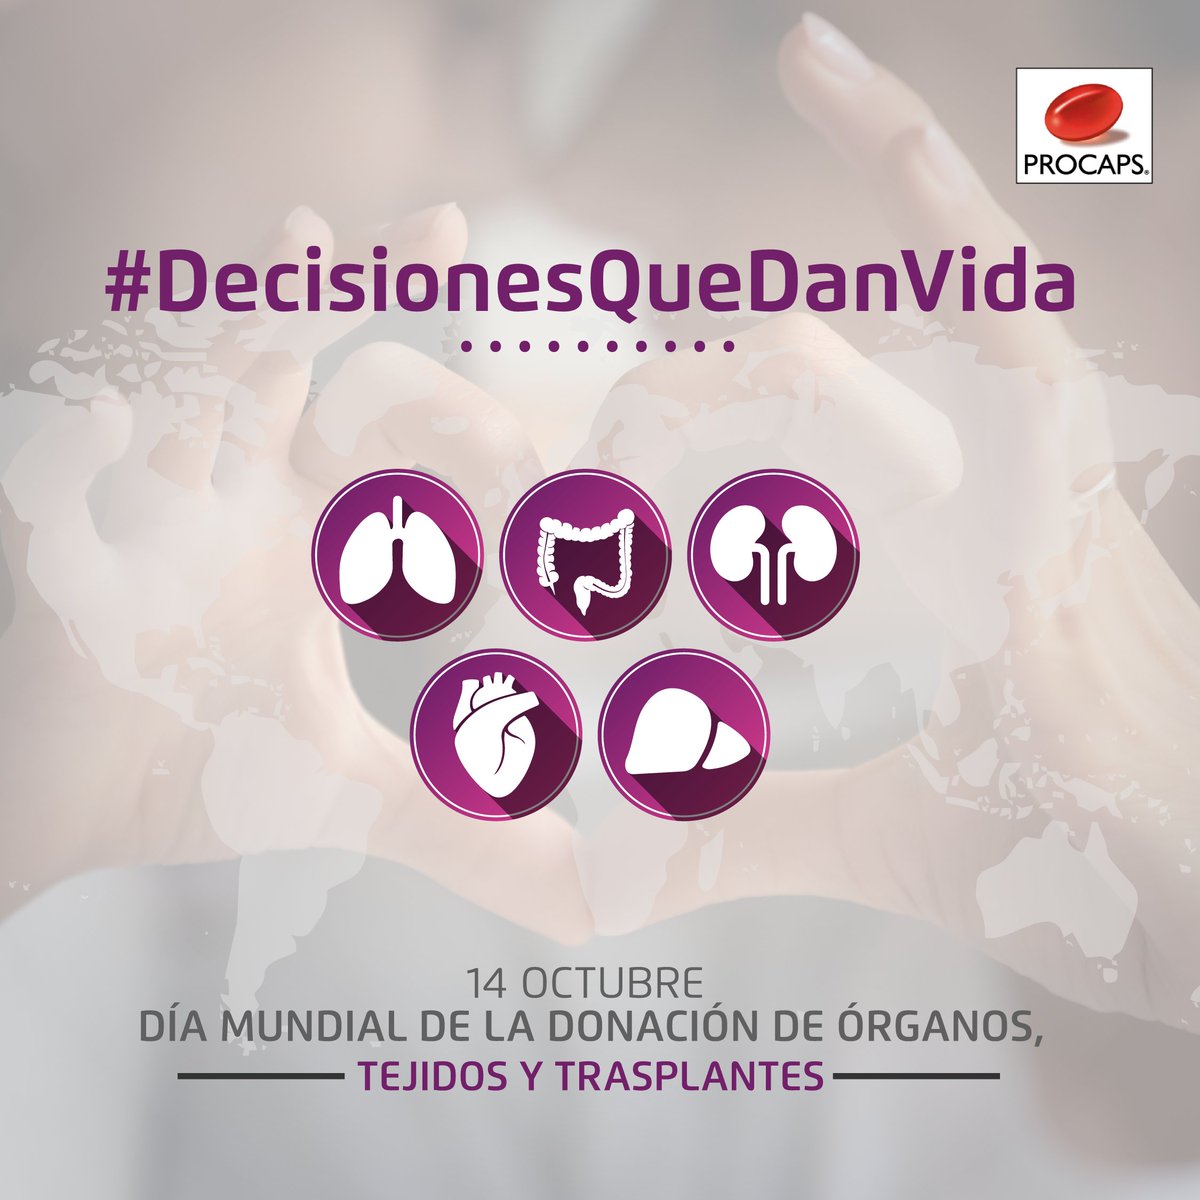 Cada 14 de octubre se conmemora el Día Mundial de la donación de órganos, tejidos y trasplantes como una forma de sensibilizar a la sociedad sobre esta acción de salud que transforma vidas.

#SiempreSalud #DecisionesQueDanVida #DonaciónDeÓrganos

bit.ly/3aDiTDO